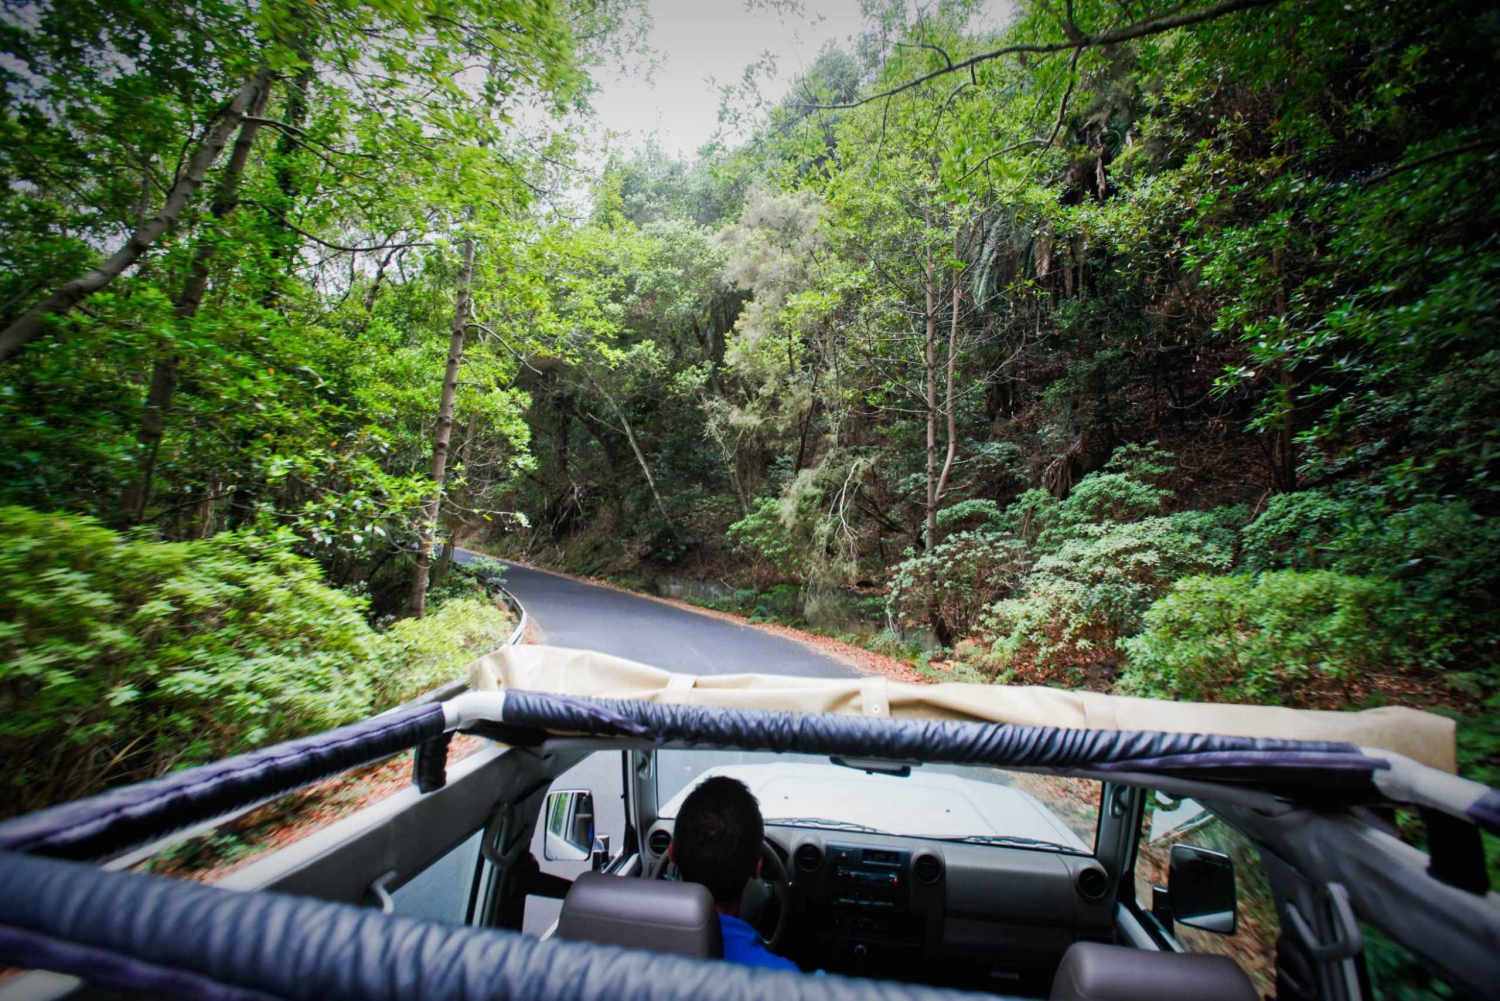 Full-Day Gomera Jeep Safari Excursion from Arona